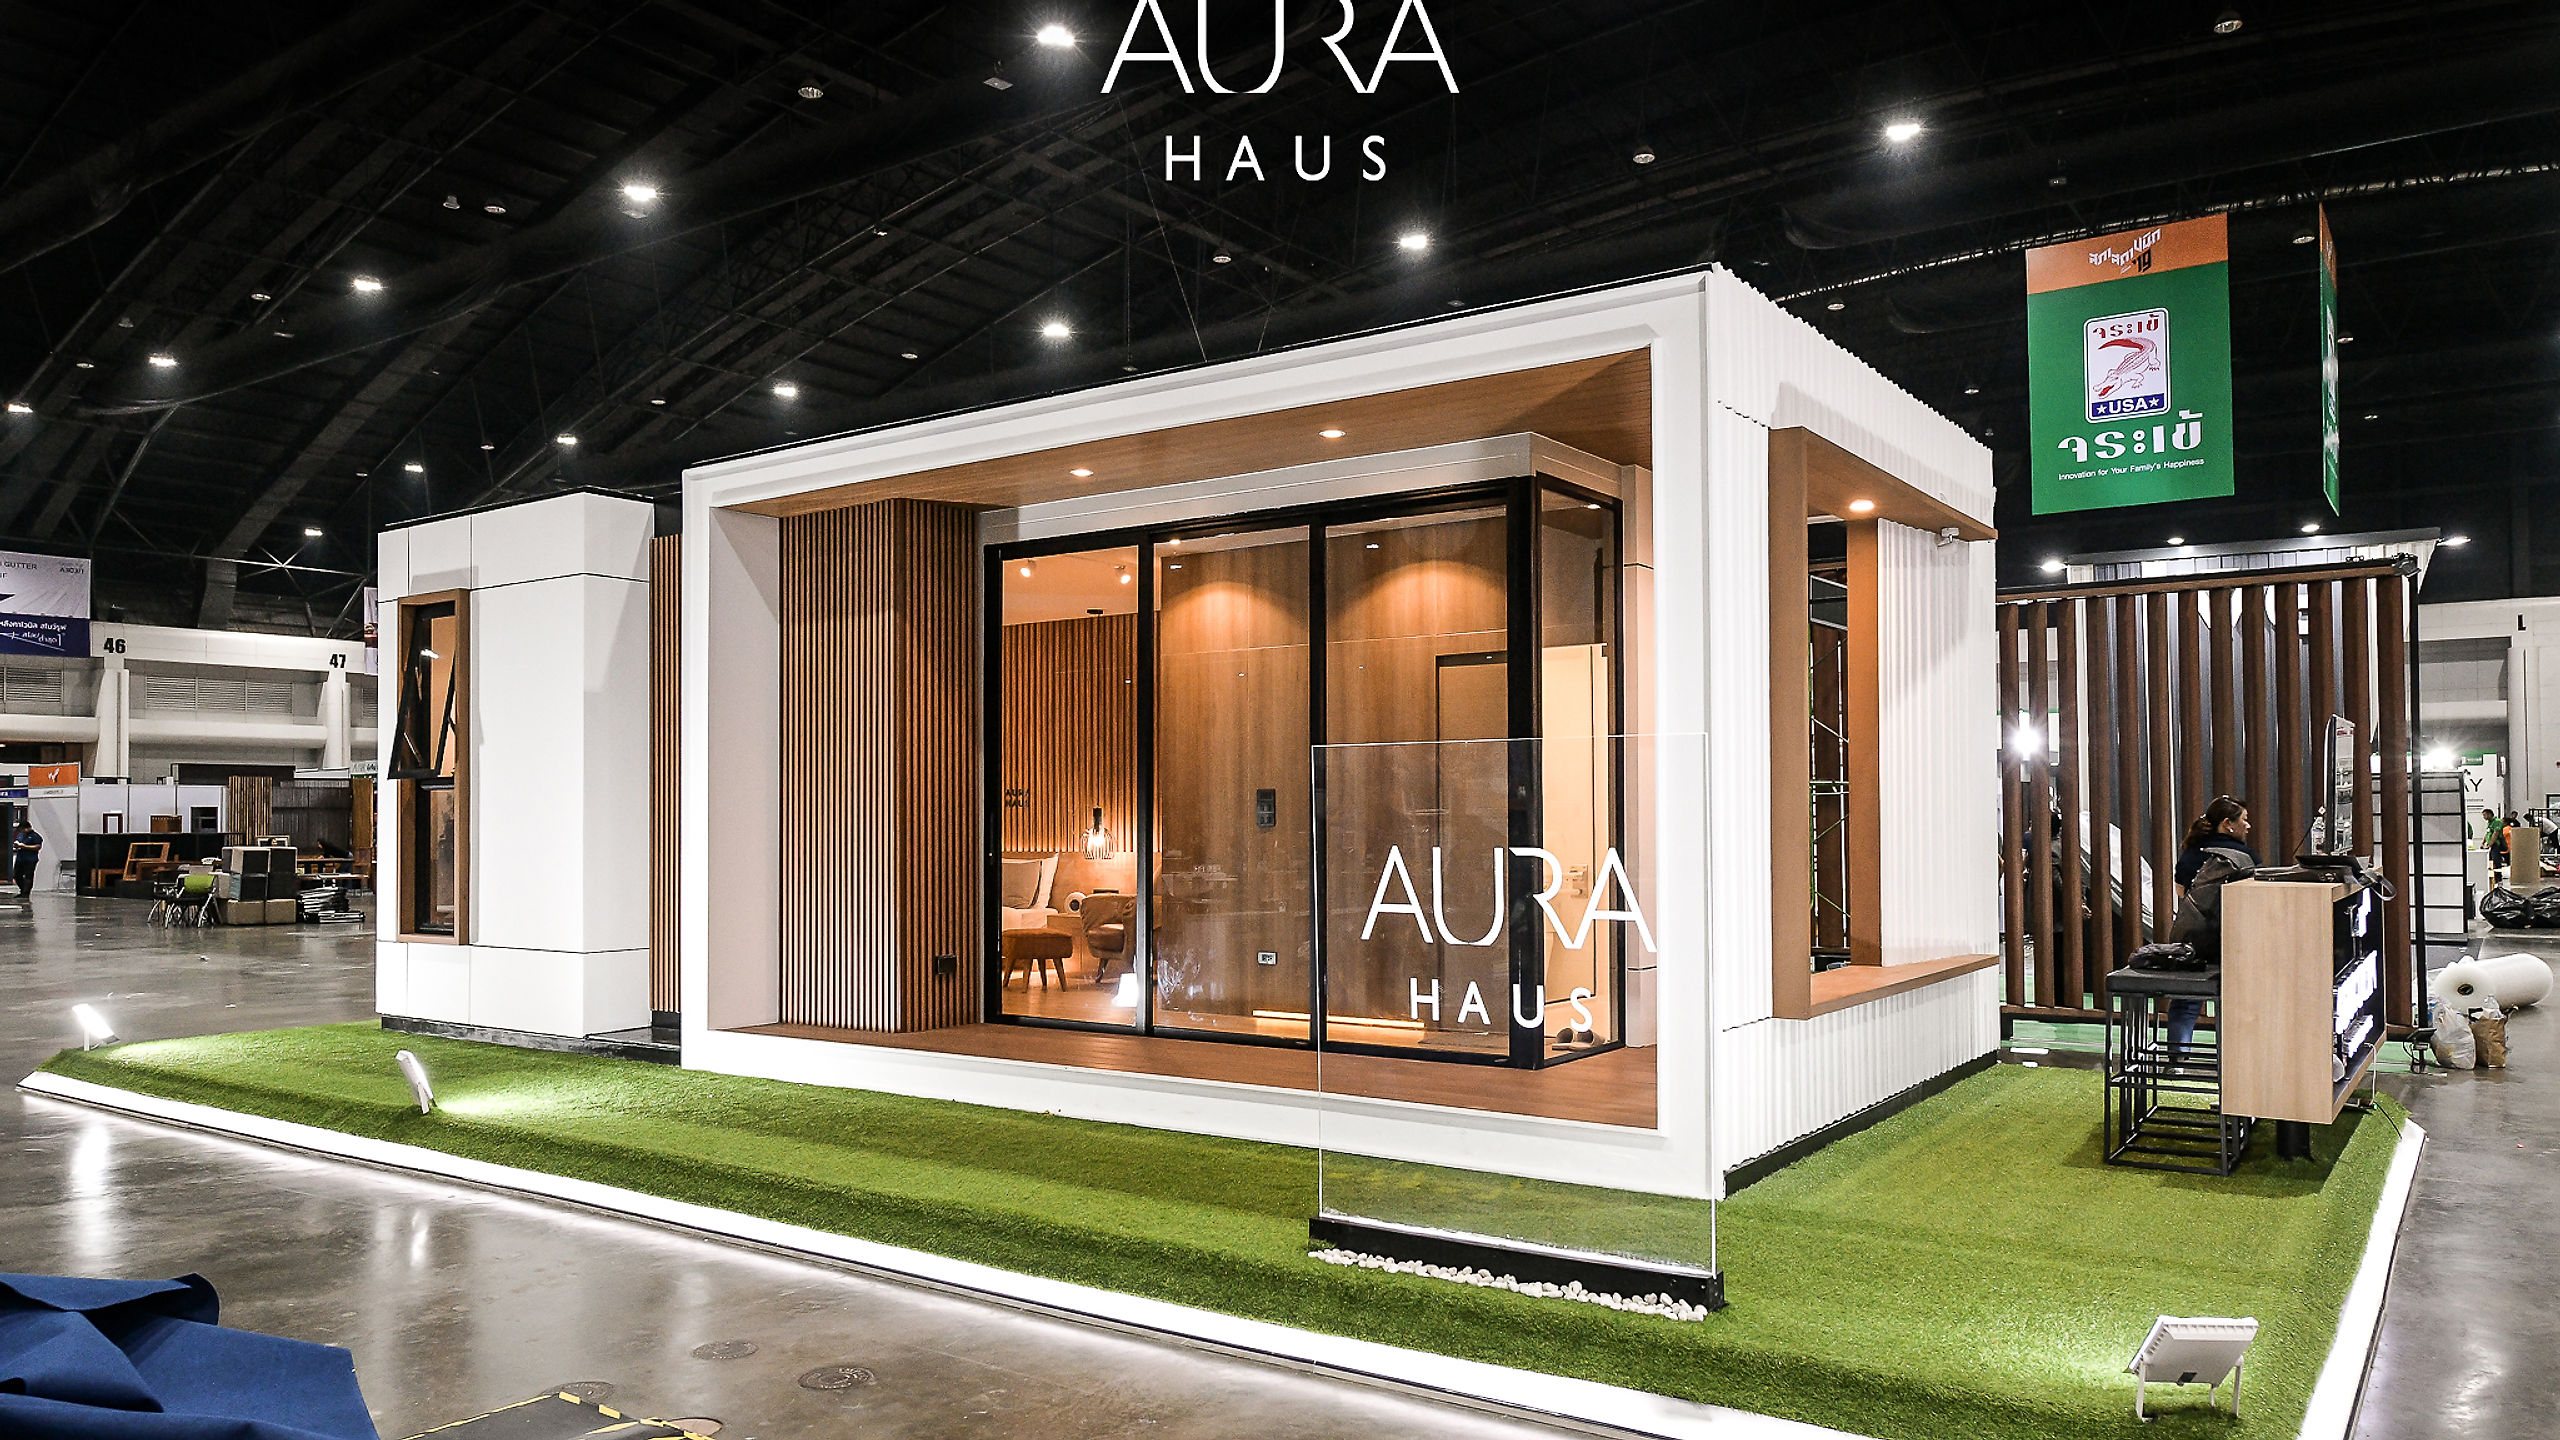 Aura Haus